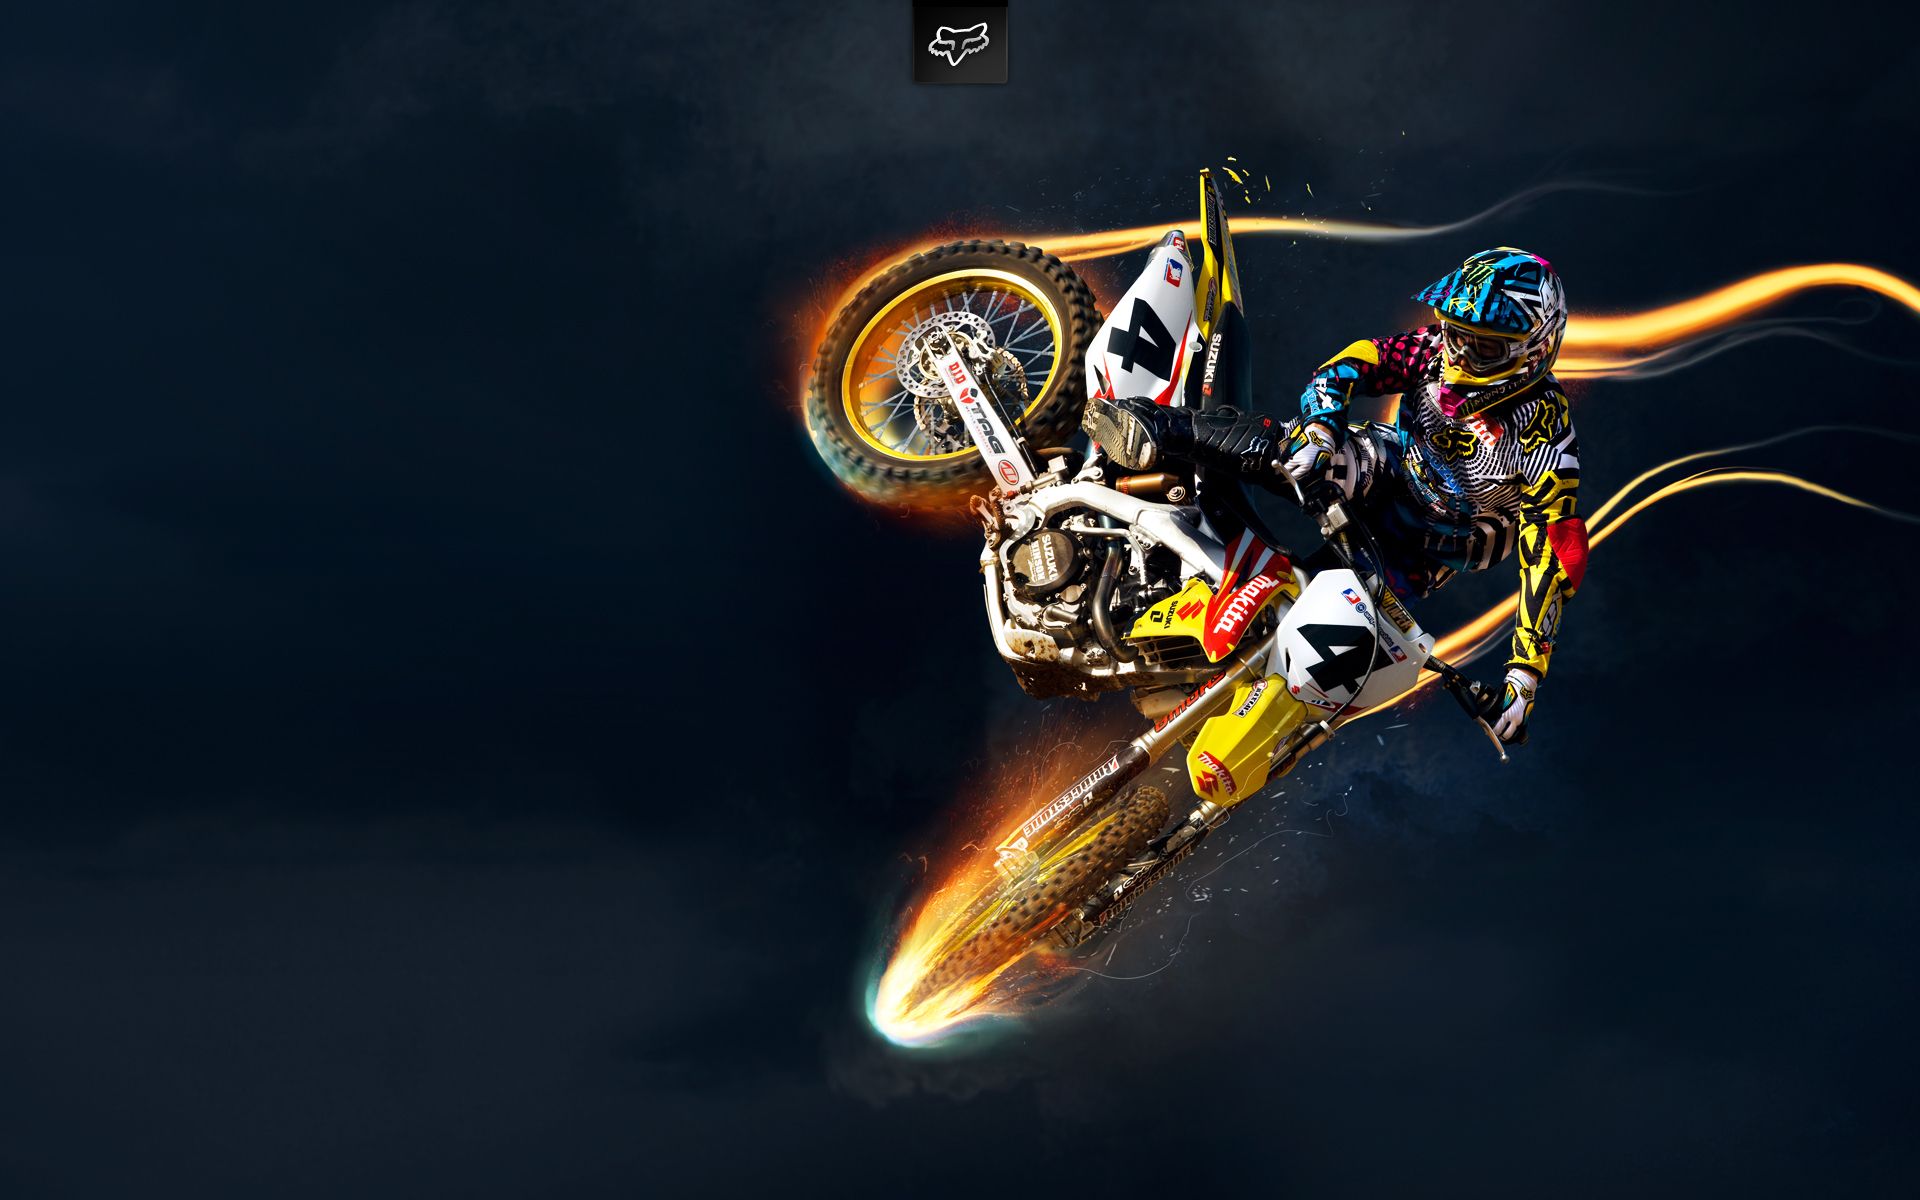 Suzuki Bike Stunts, HD Bikes, 4k Wallpaper, Image, Background, Photo and Picture